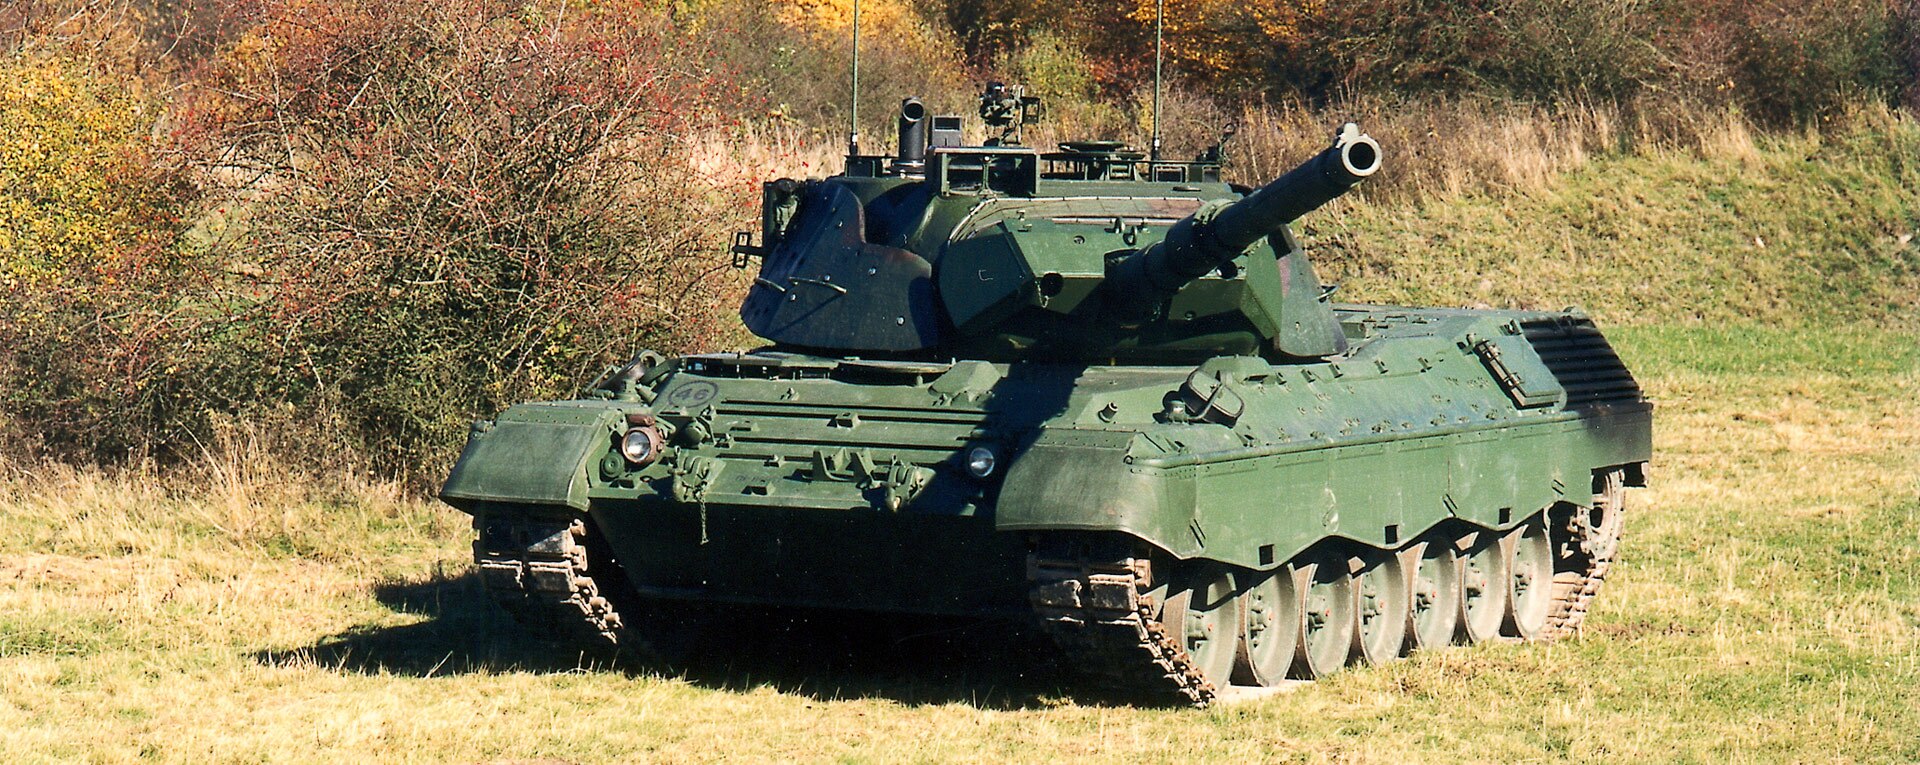 مشخصات تانک اصلی نبرد لئوپارد1 آلمان